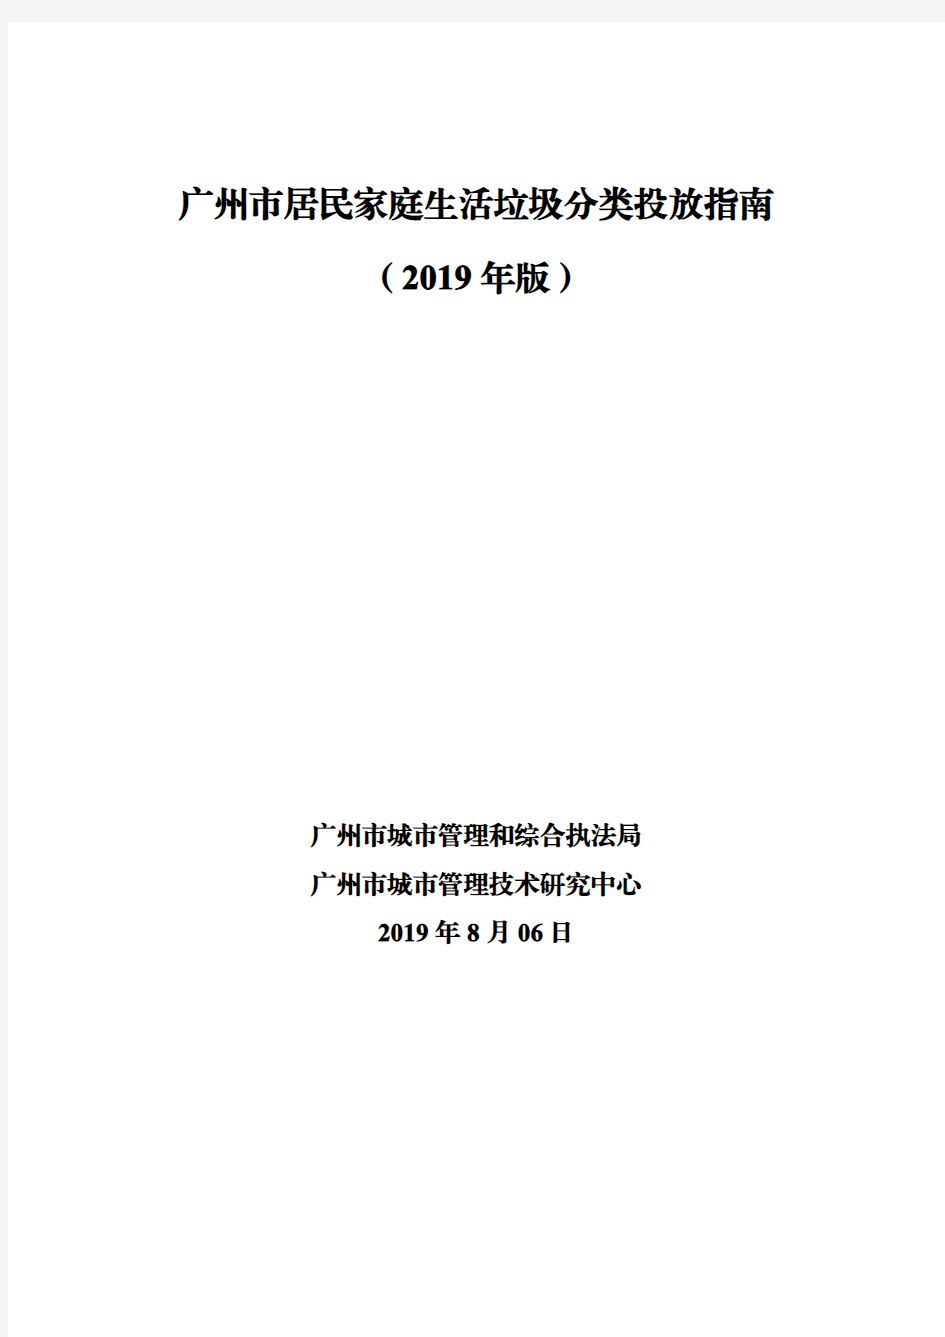 广州市居民家庭生活垃圾分类投放指南(2019年版)